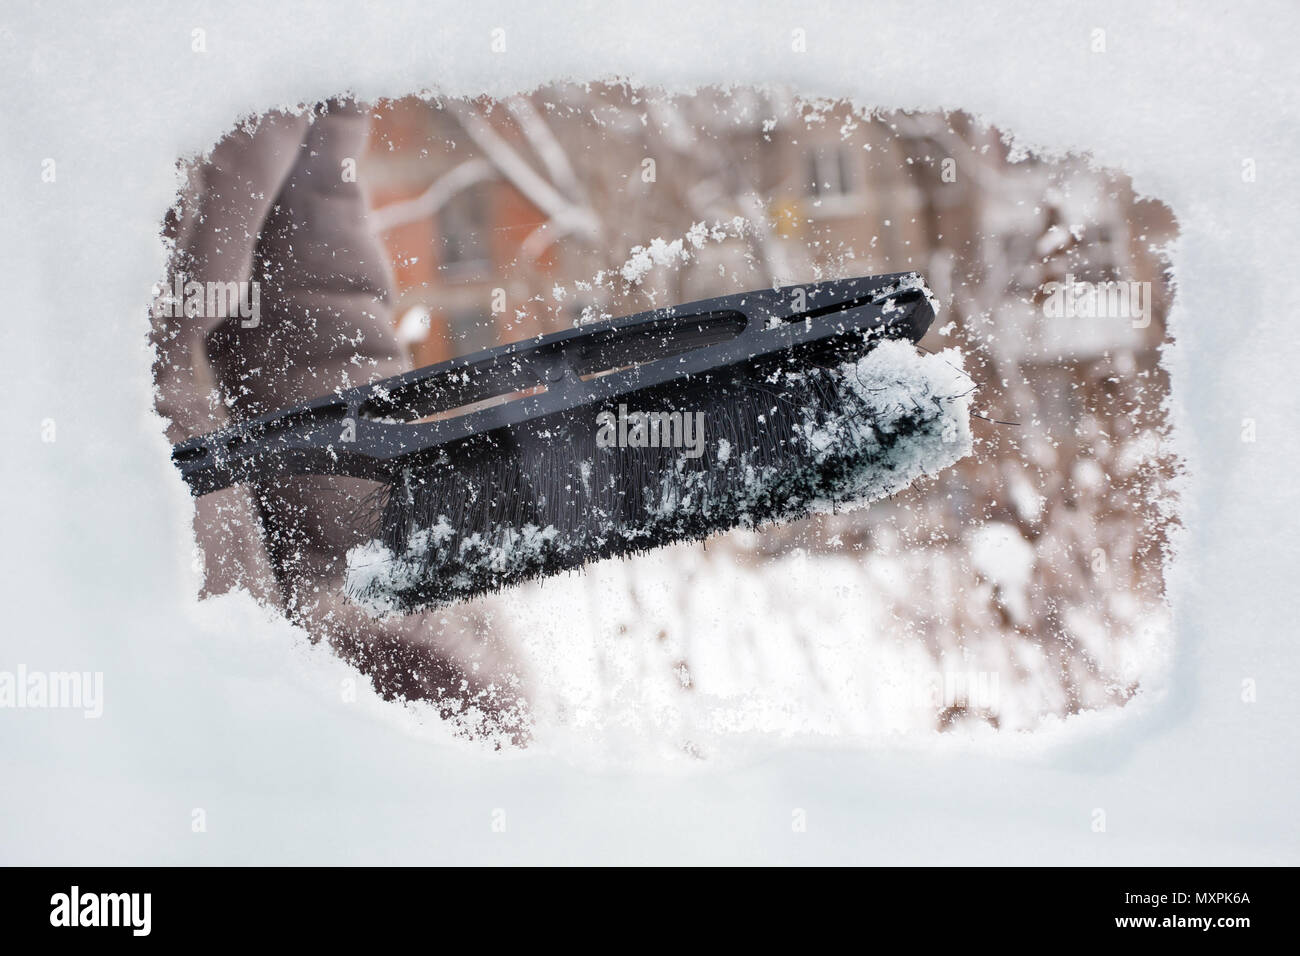 Hand Reinigung von Auto aus dem Schnee mit Bürste Stockfotografie - Alamy